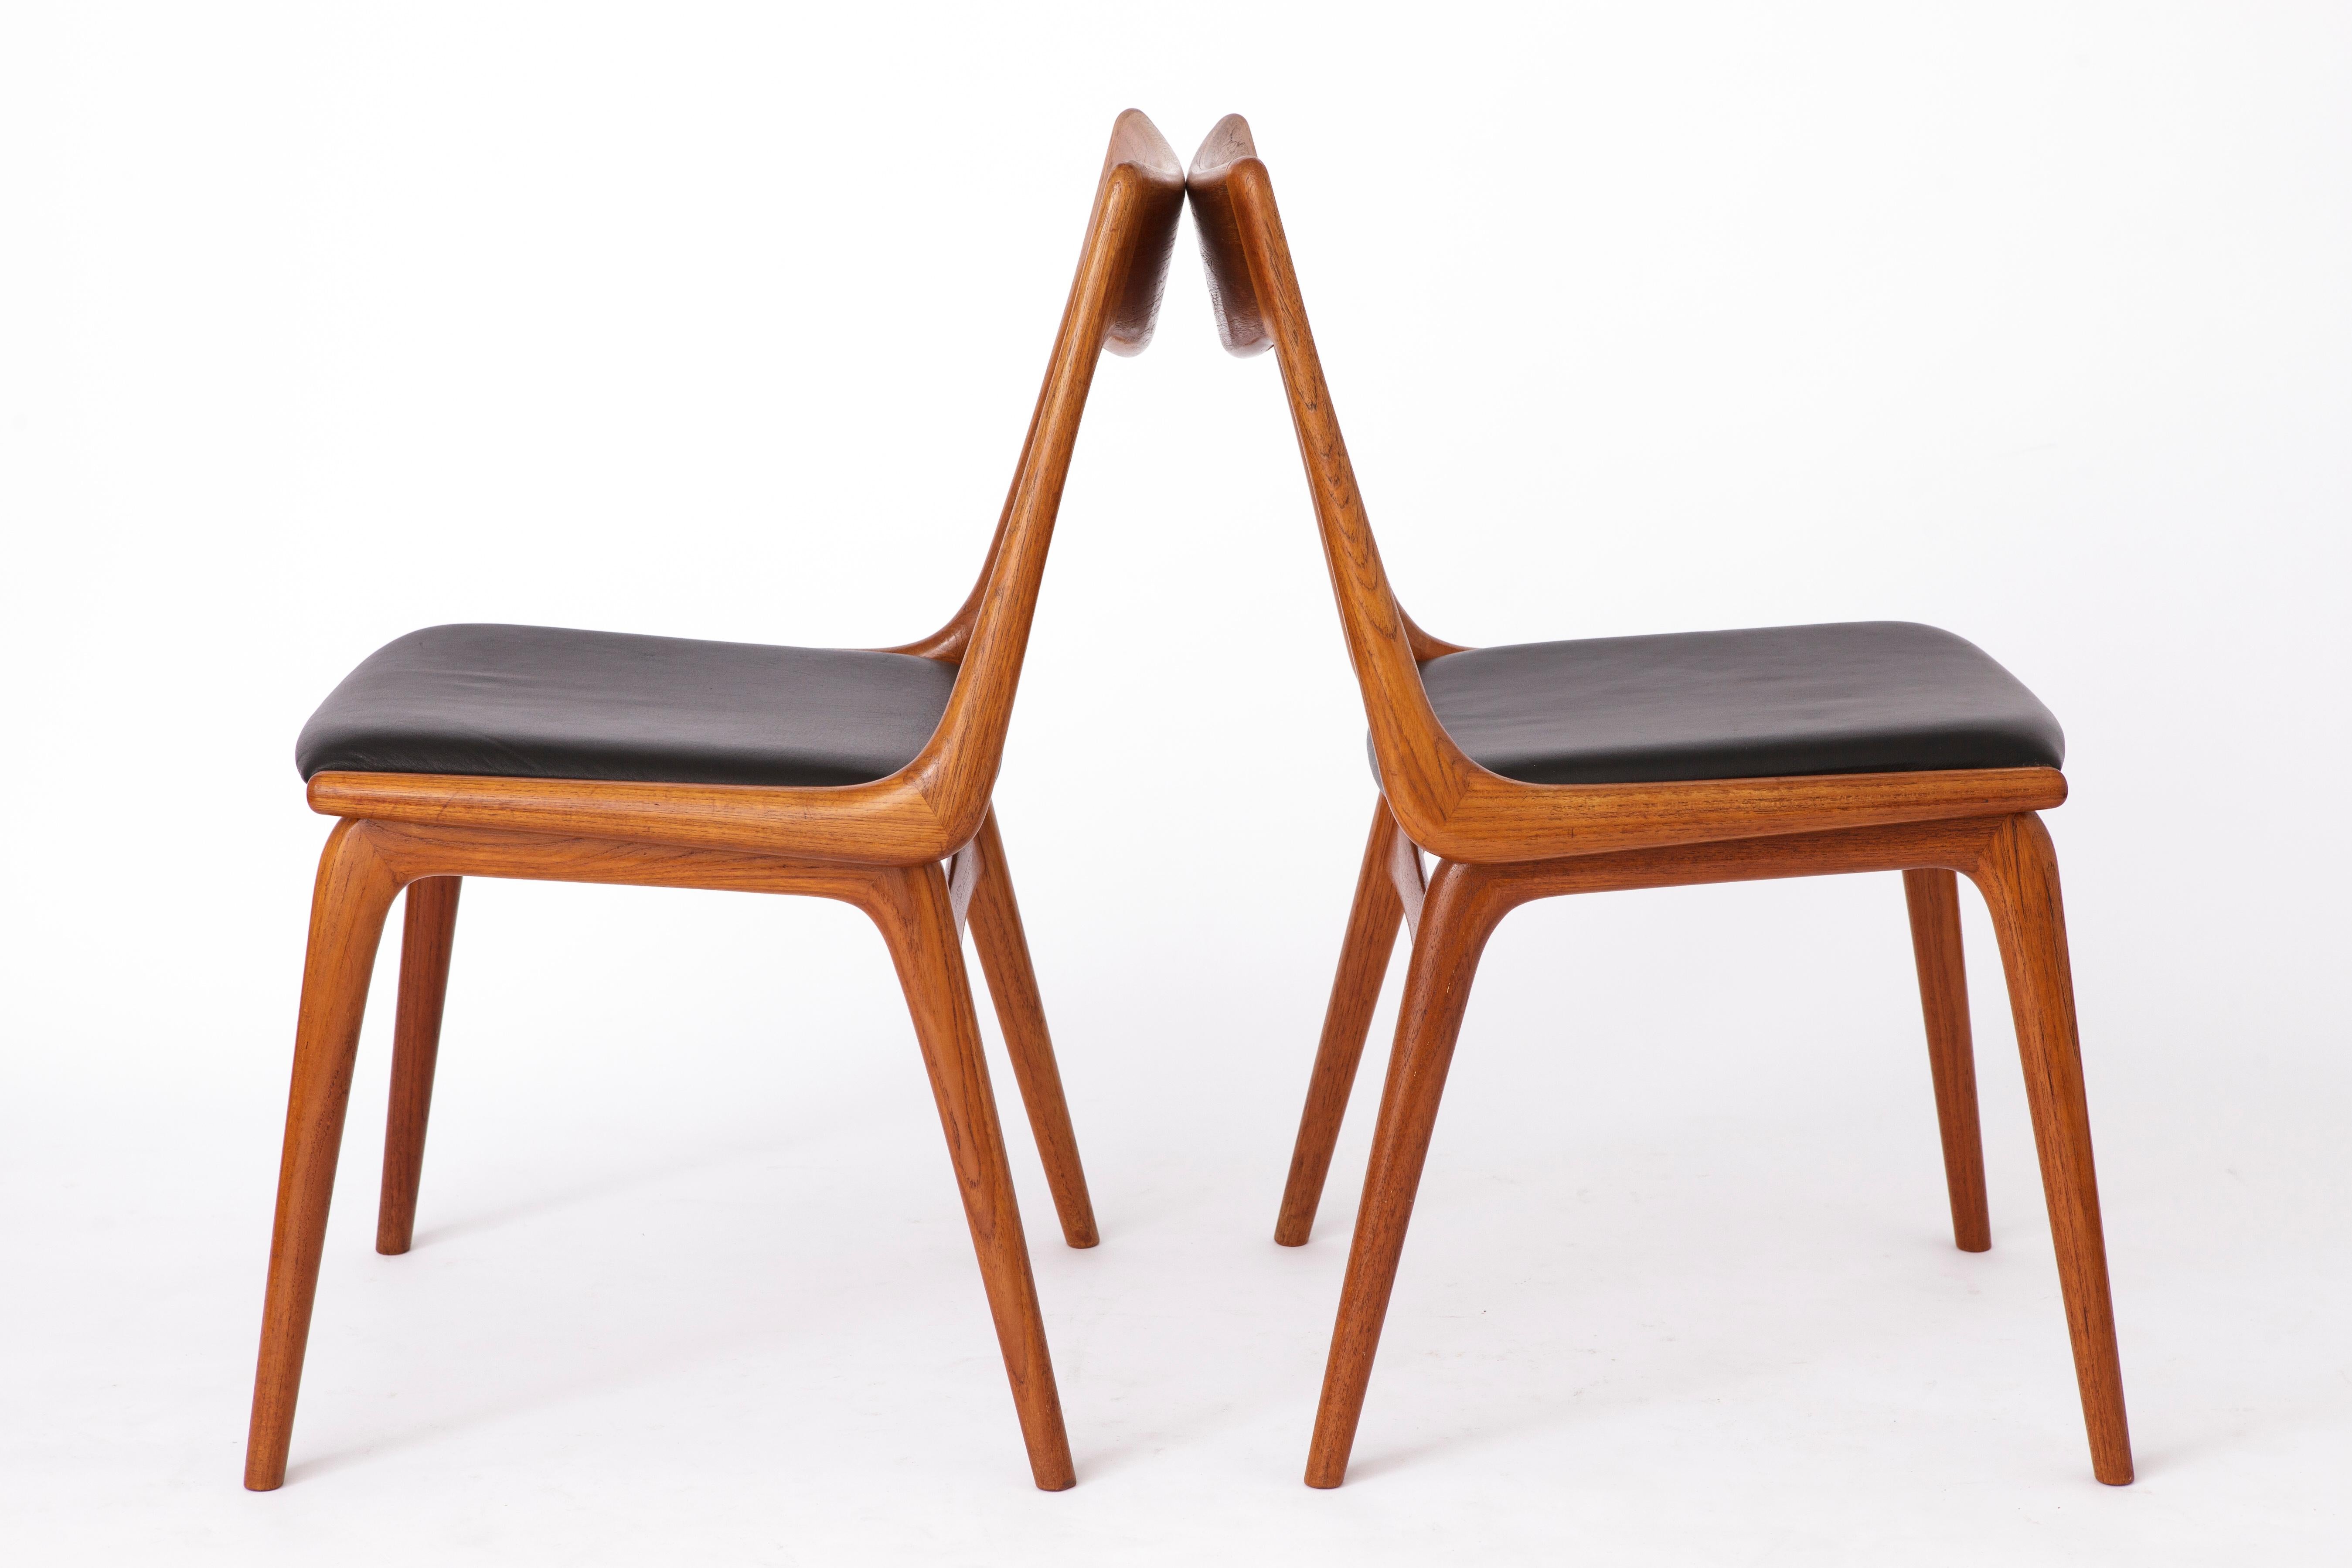 Polished Teak Boomerang Dining Chairs by Alfred Christensen for Slagelse Møbelværk, 1950s For Sale